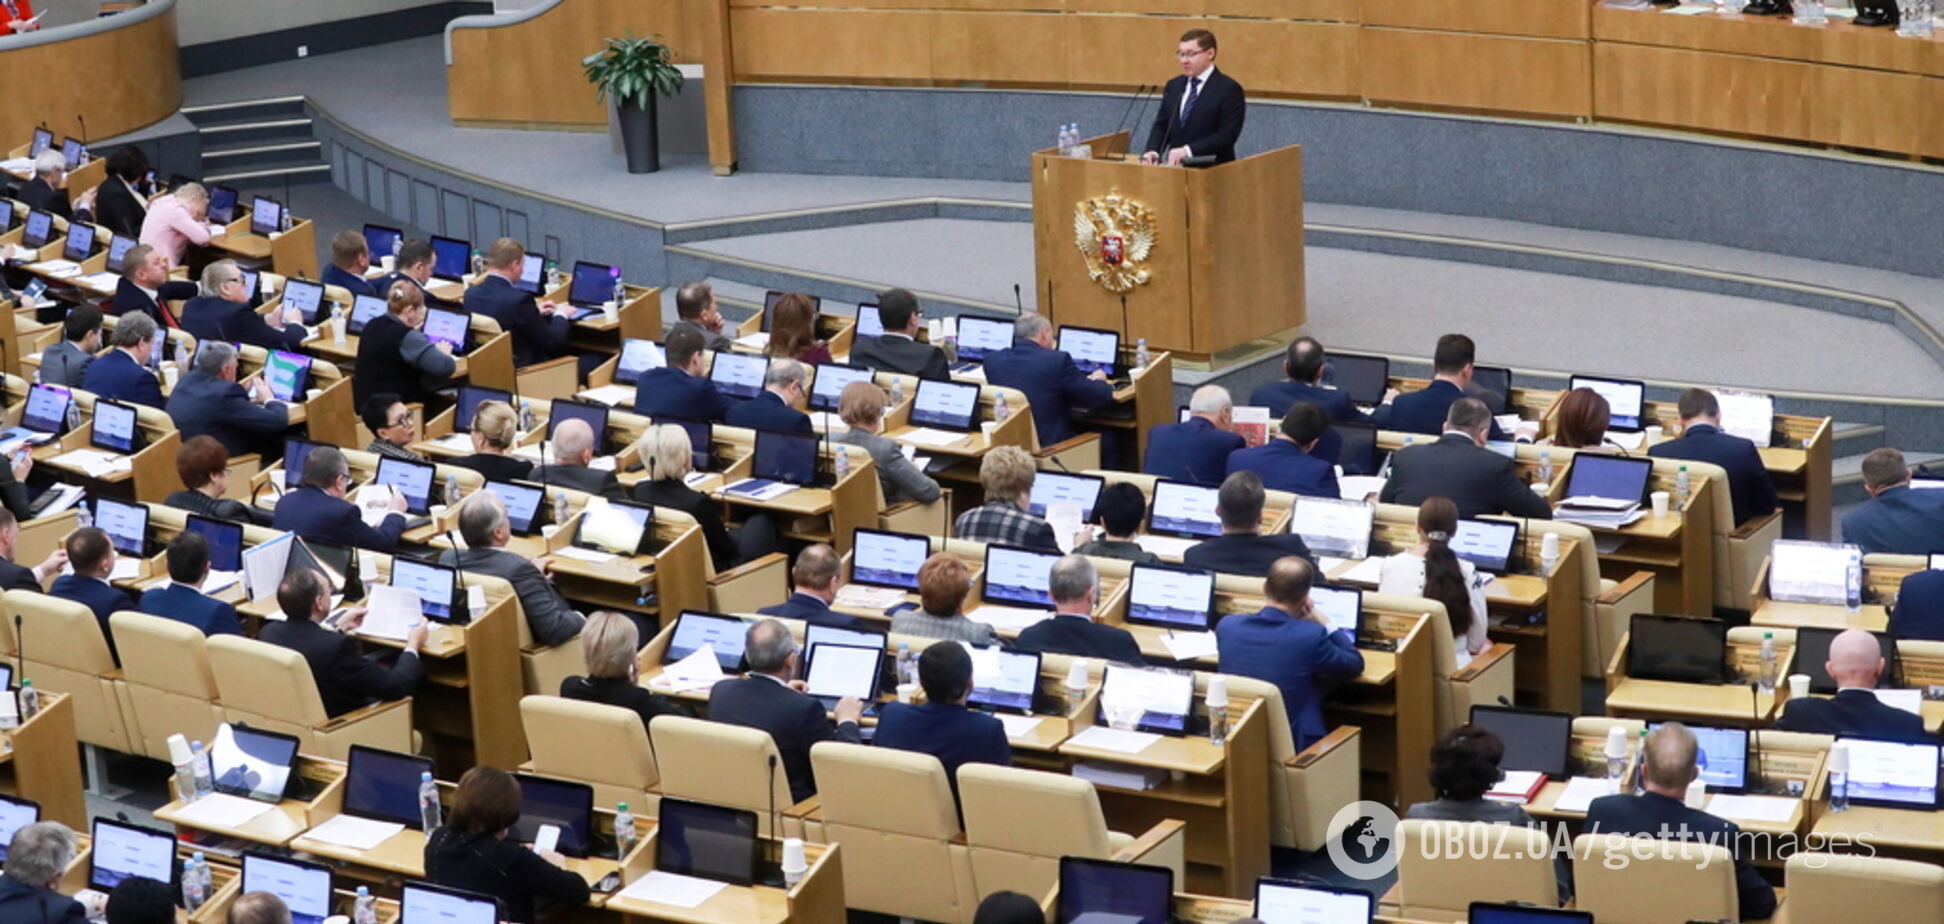 У Росії назвали найбагатших депутатів і чиновників: список